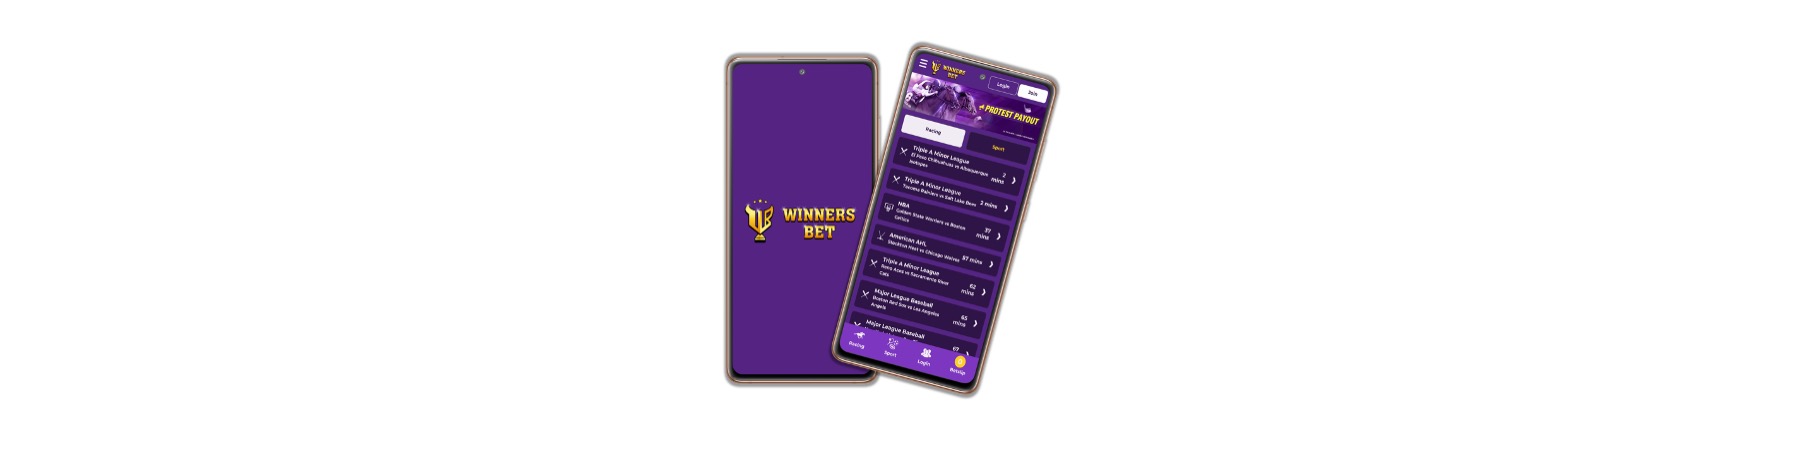 WinnersBet App